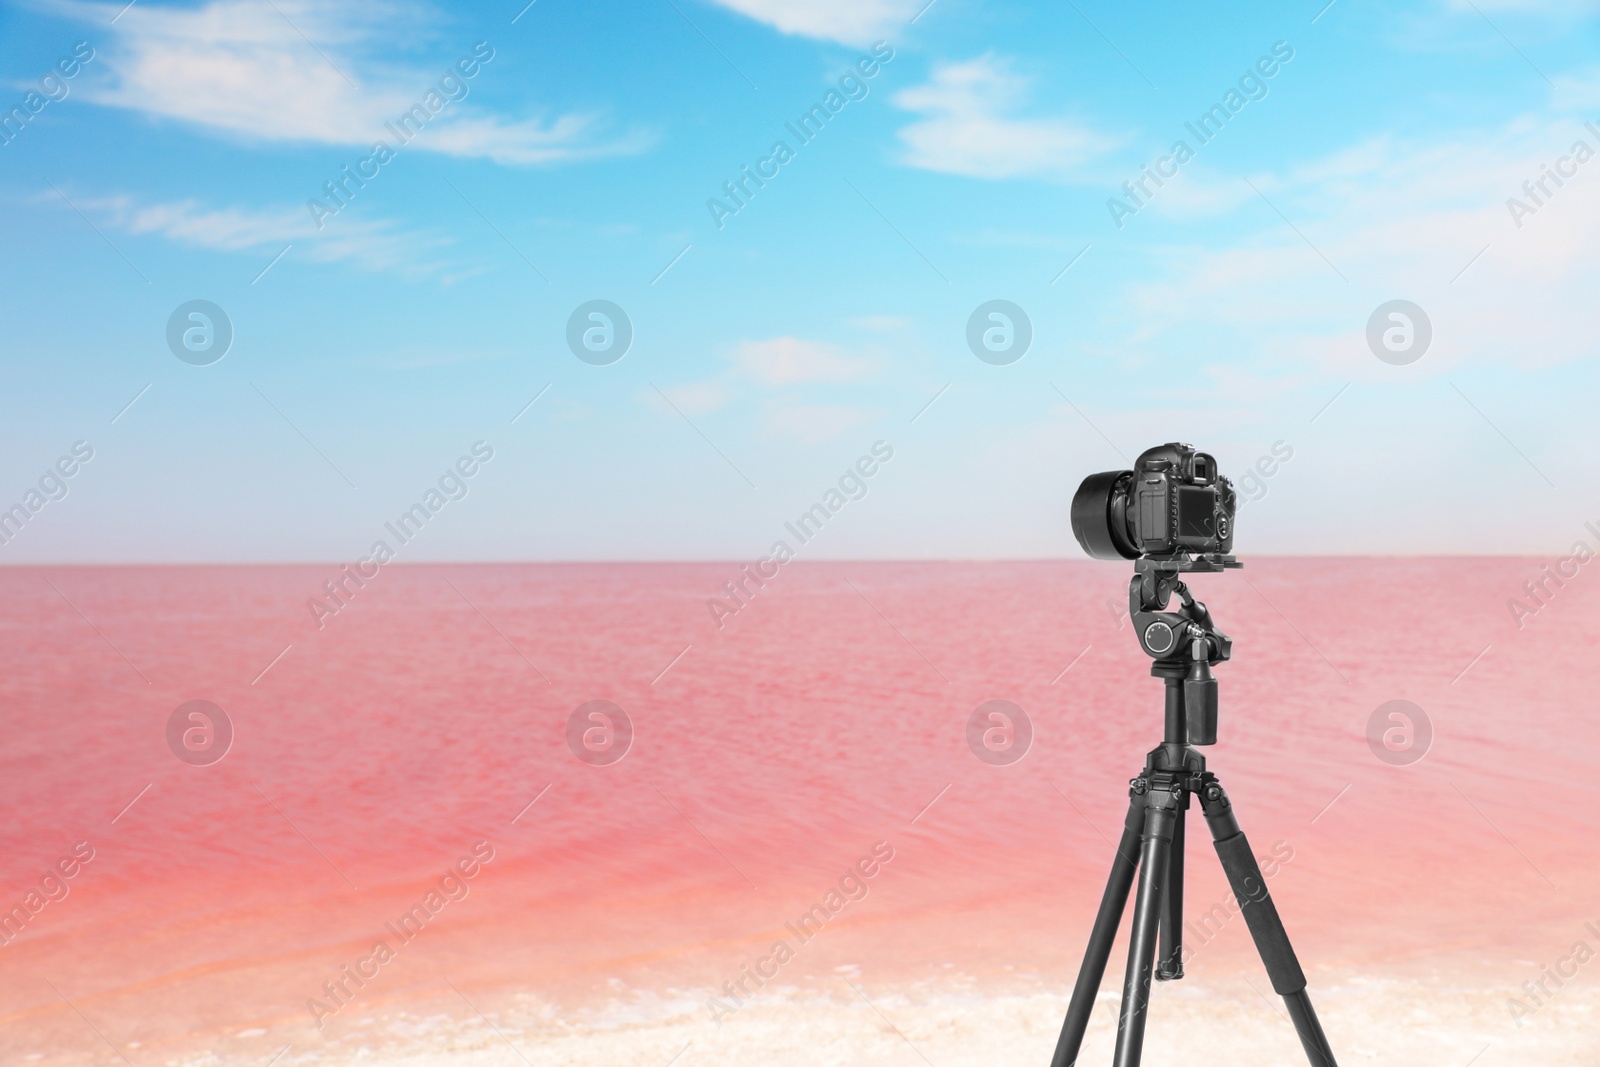 Photo of Professional camera on tripod near pink lake